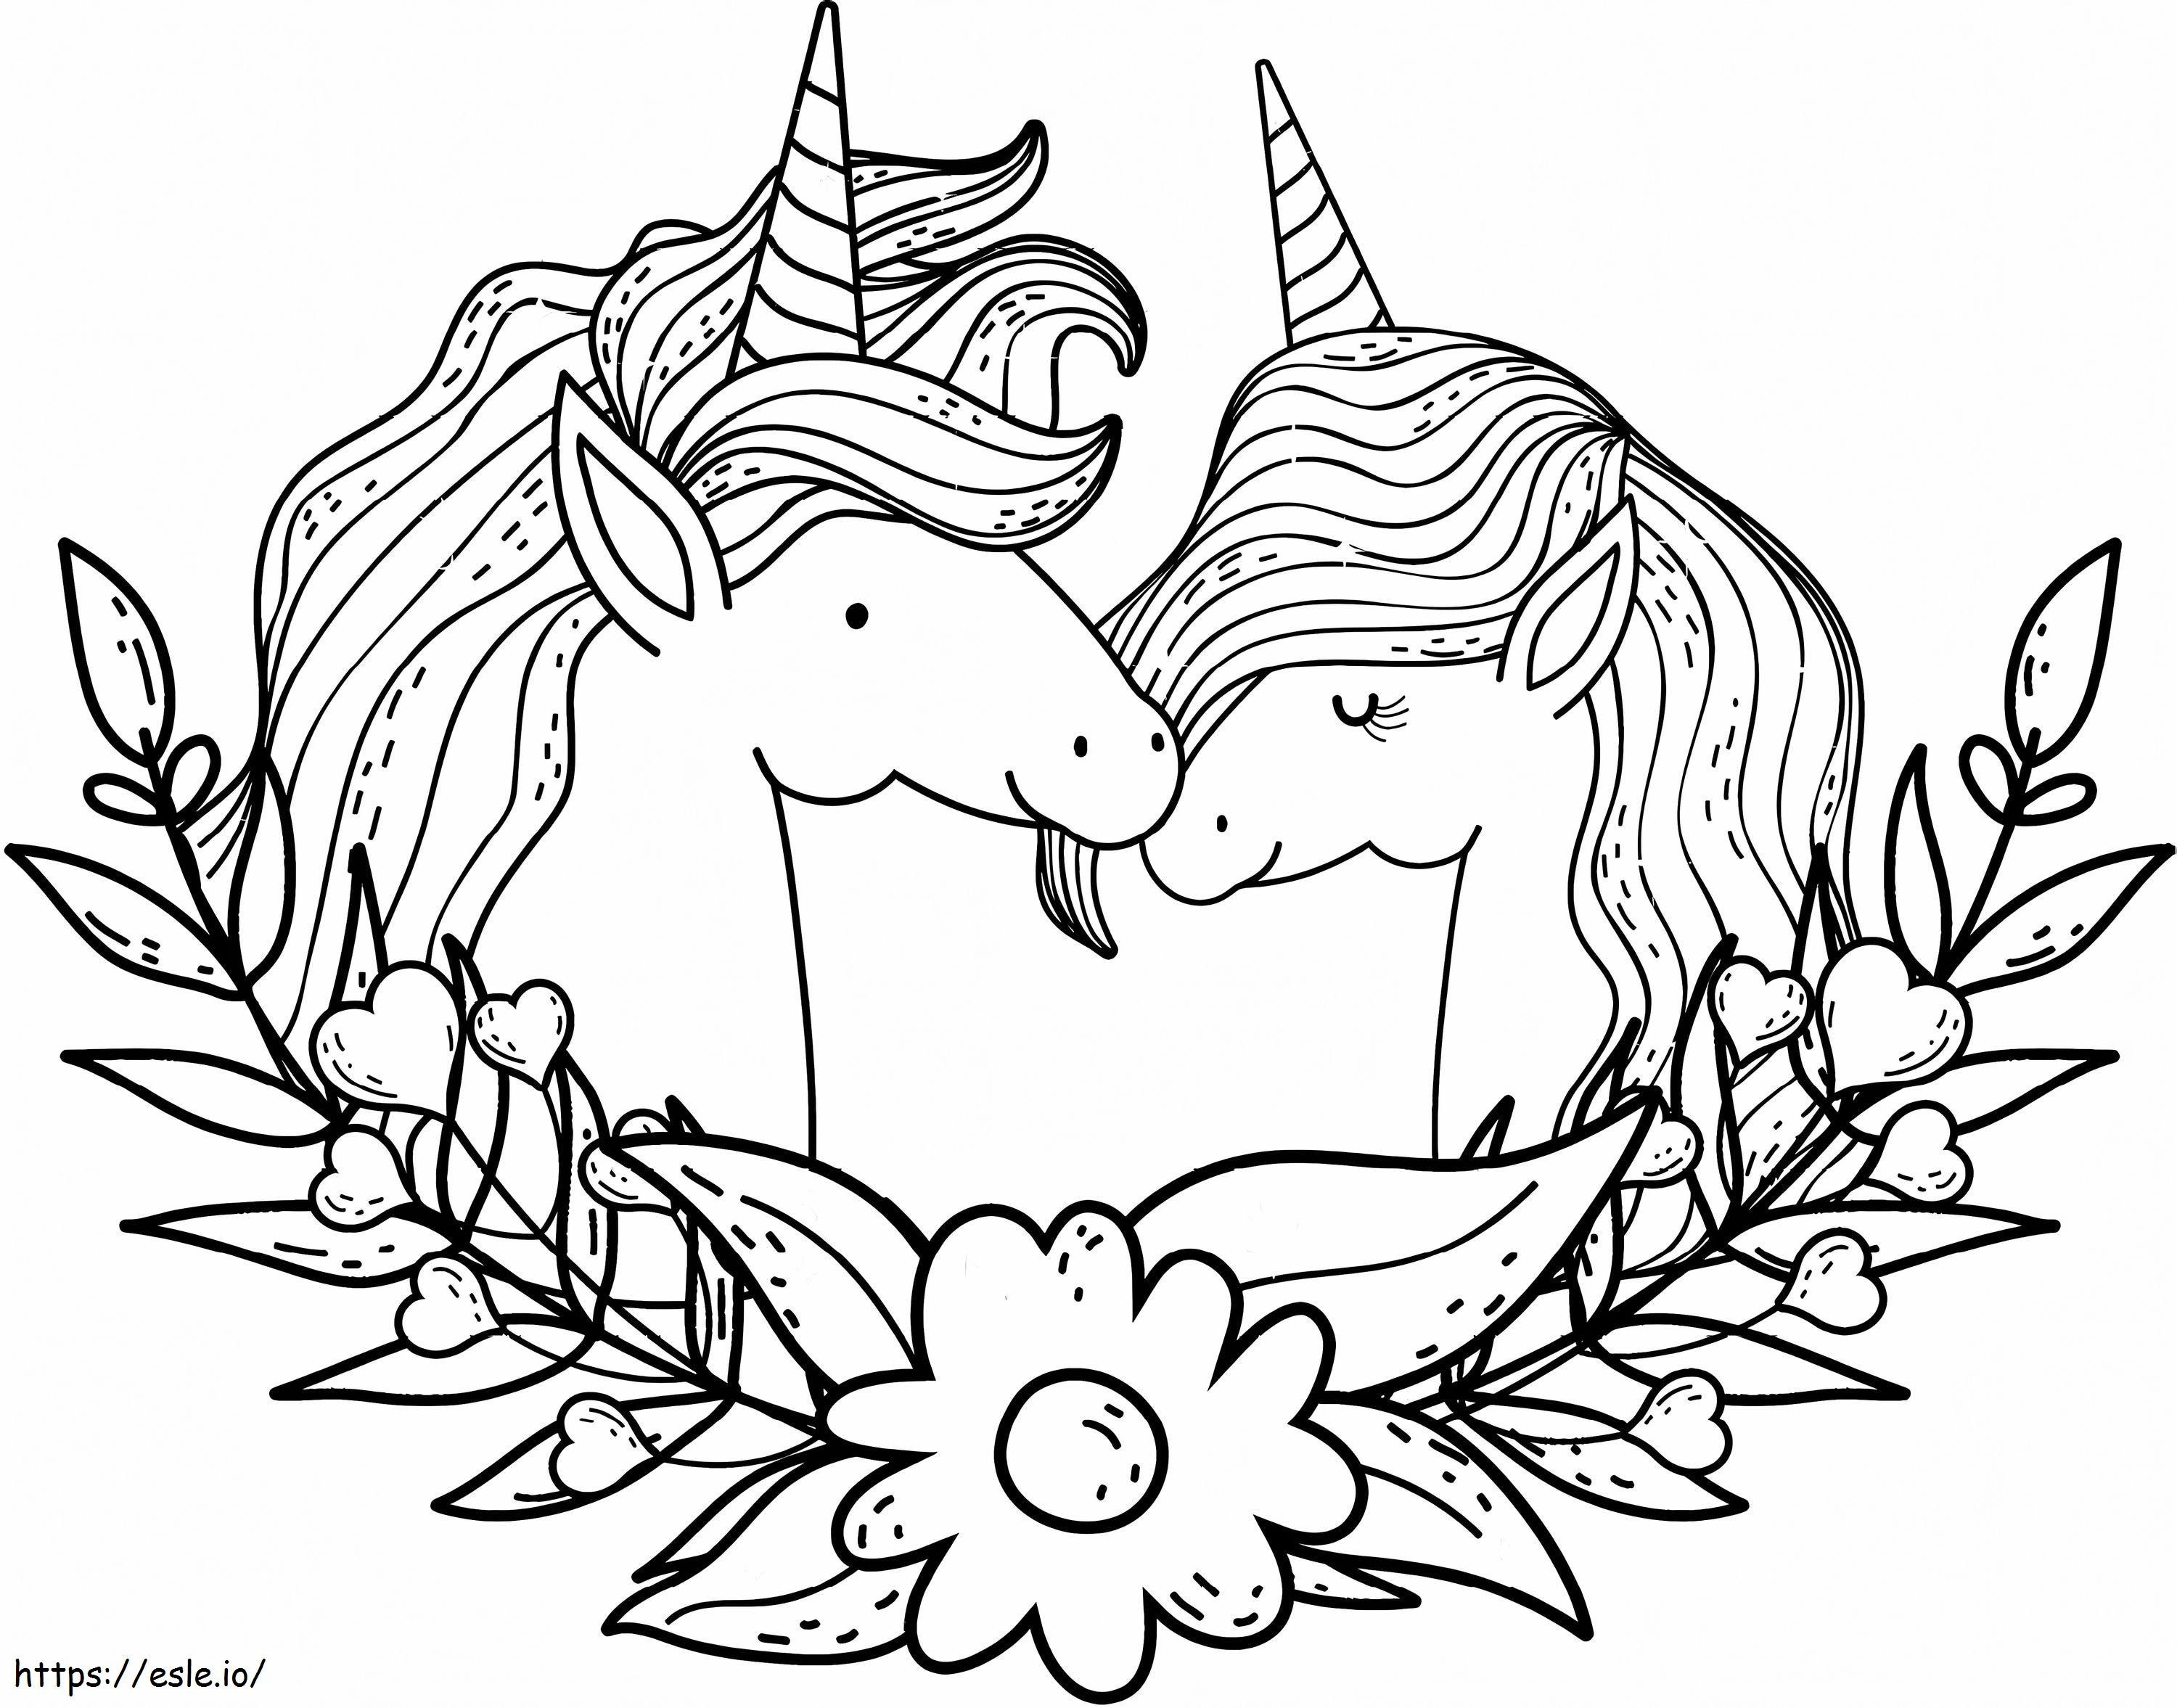 A Unicorn Couple coloring page